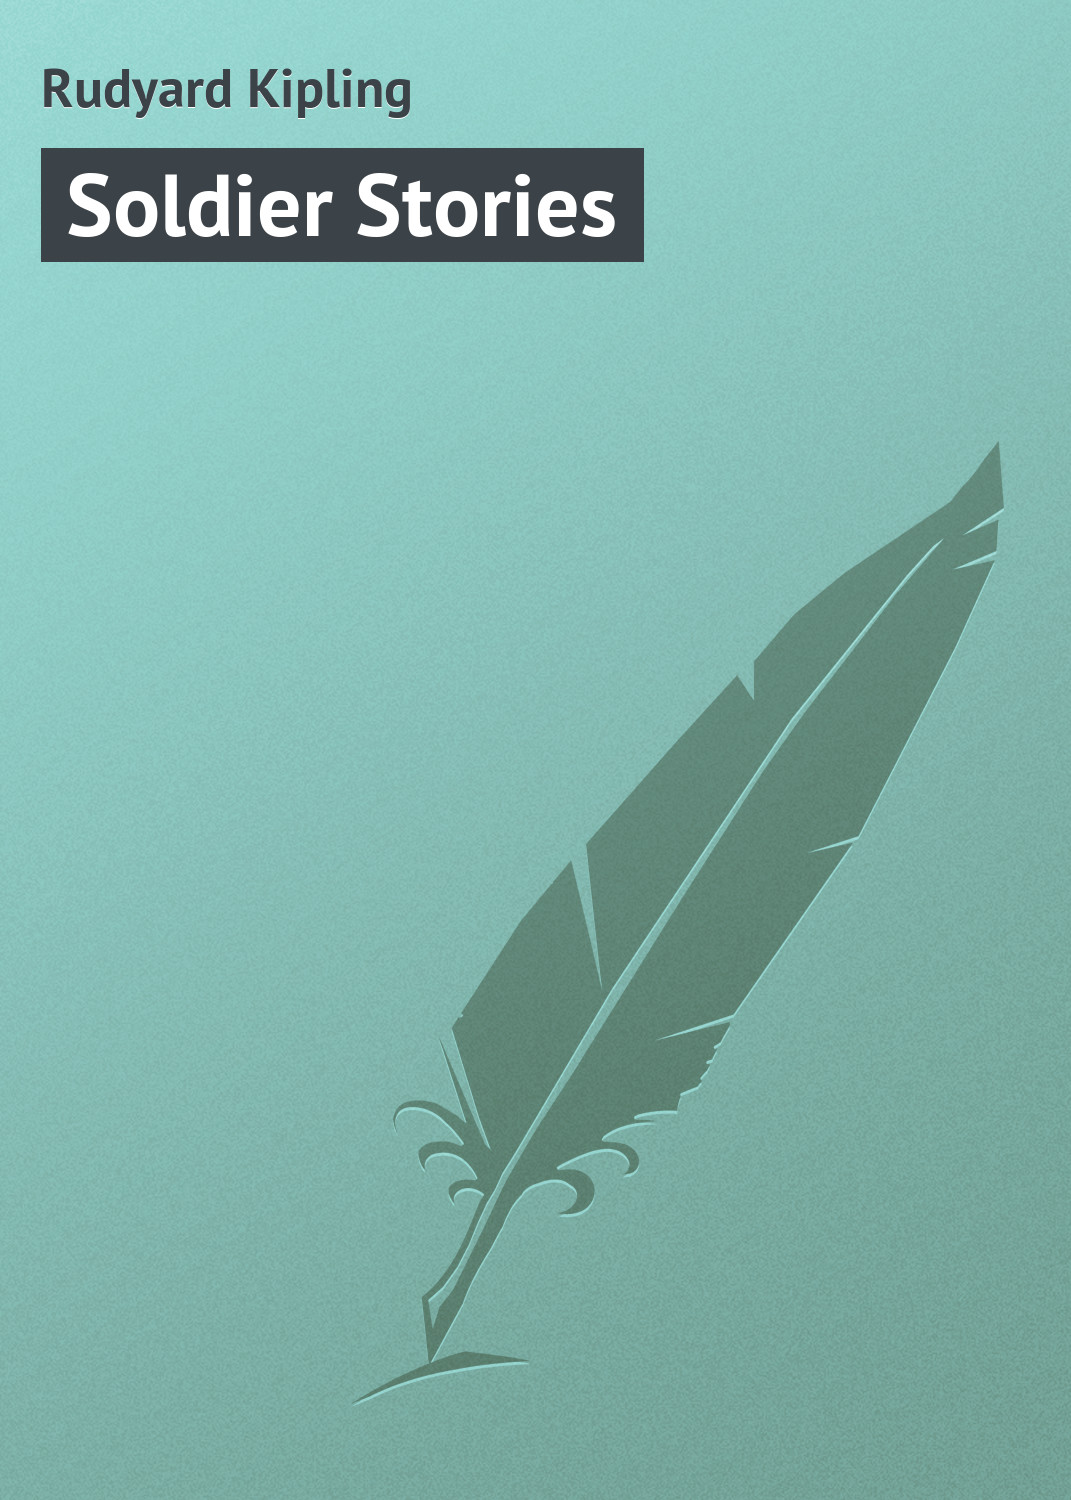 Книга Soldier Stories из серии , созданная Rudyard Kipling, может относится к жанру Иностранные языки, Зарубежная классика. Стоимость электронной книги Soldier Stories с идентификатором 22805506 составляет 5.99 руб.